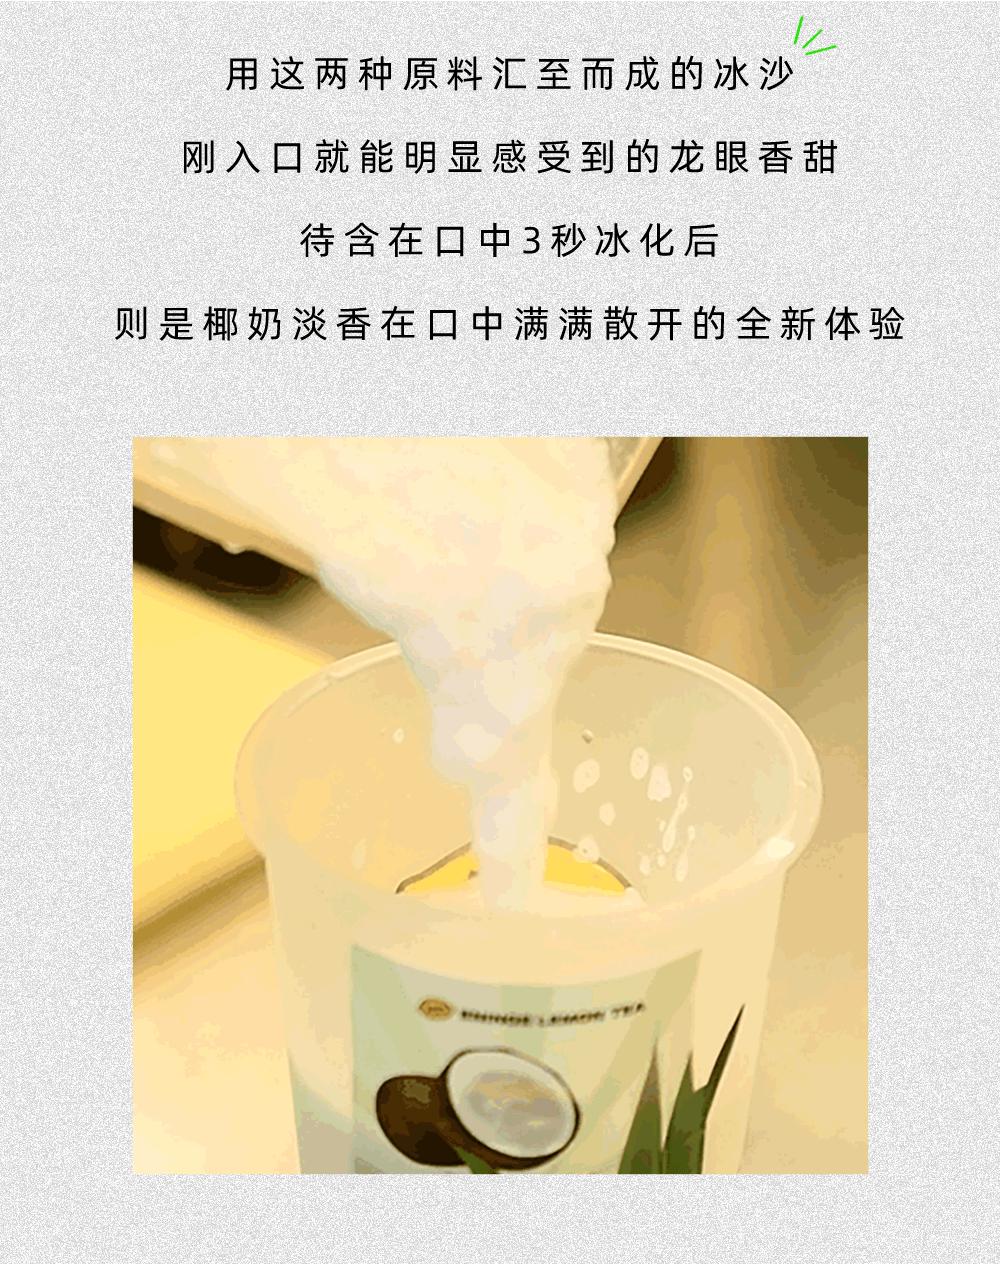 1柠1官网-广州1柠1柠檬茶加盟咨询_手打柠檬茶加盟品牌